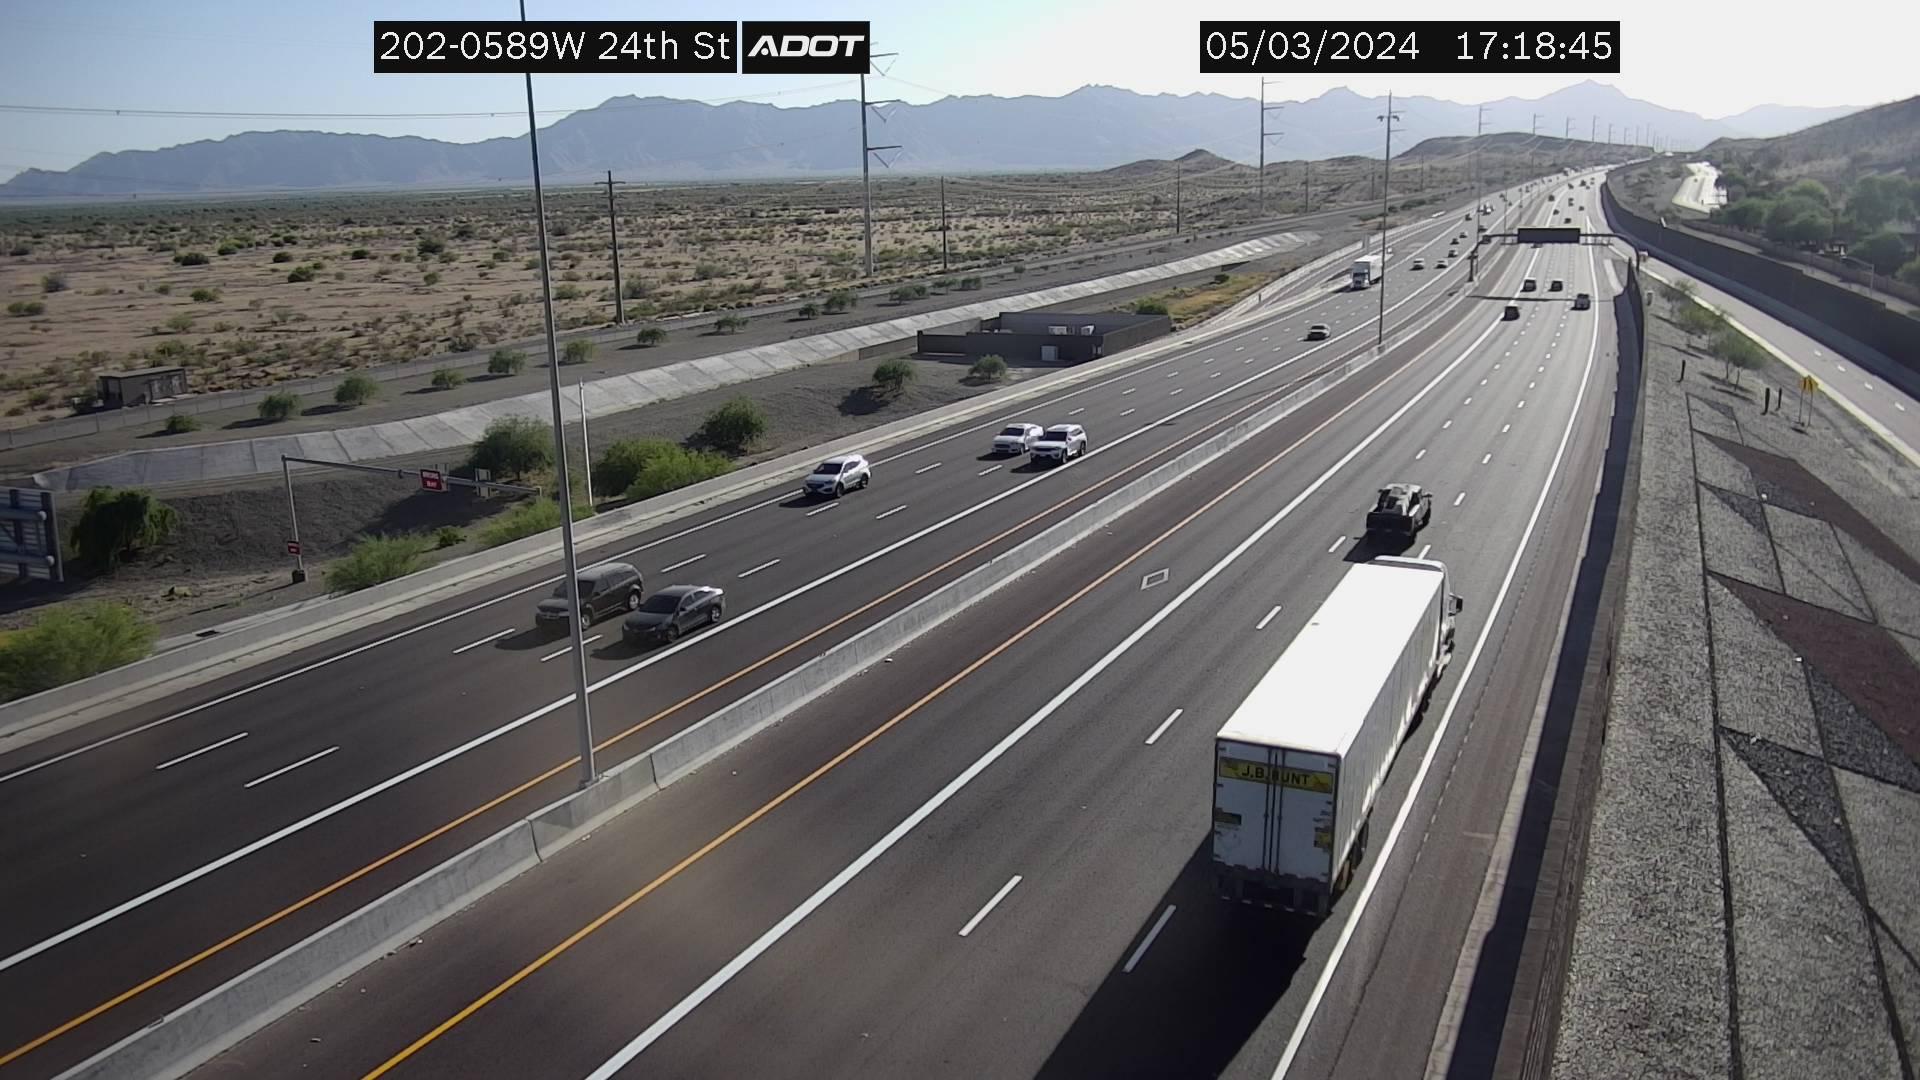 Phoenix › West: L-202 WB 58.91 @24th St Traffic Camera